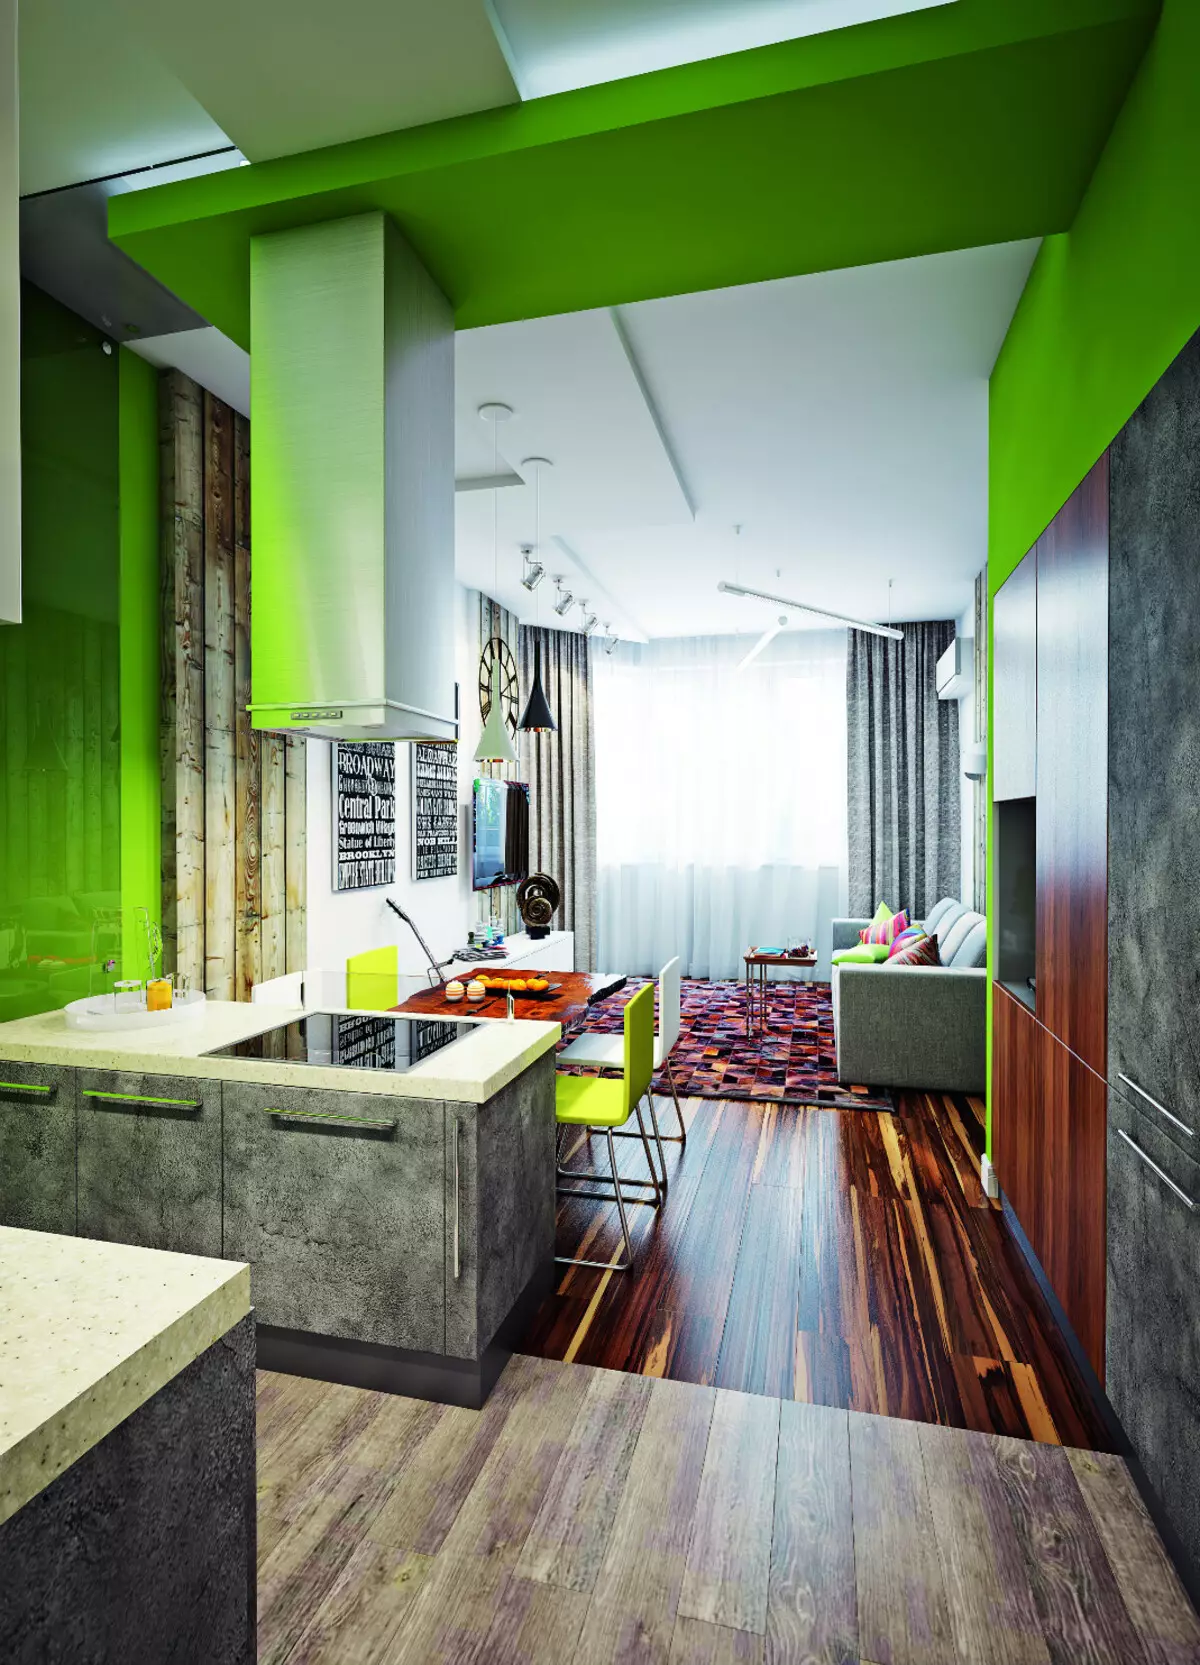 Elements d'estil ecològic a diferents instal·lacions de l'apartament: 20 idees (foto)